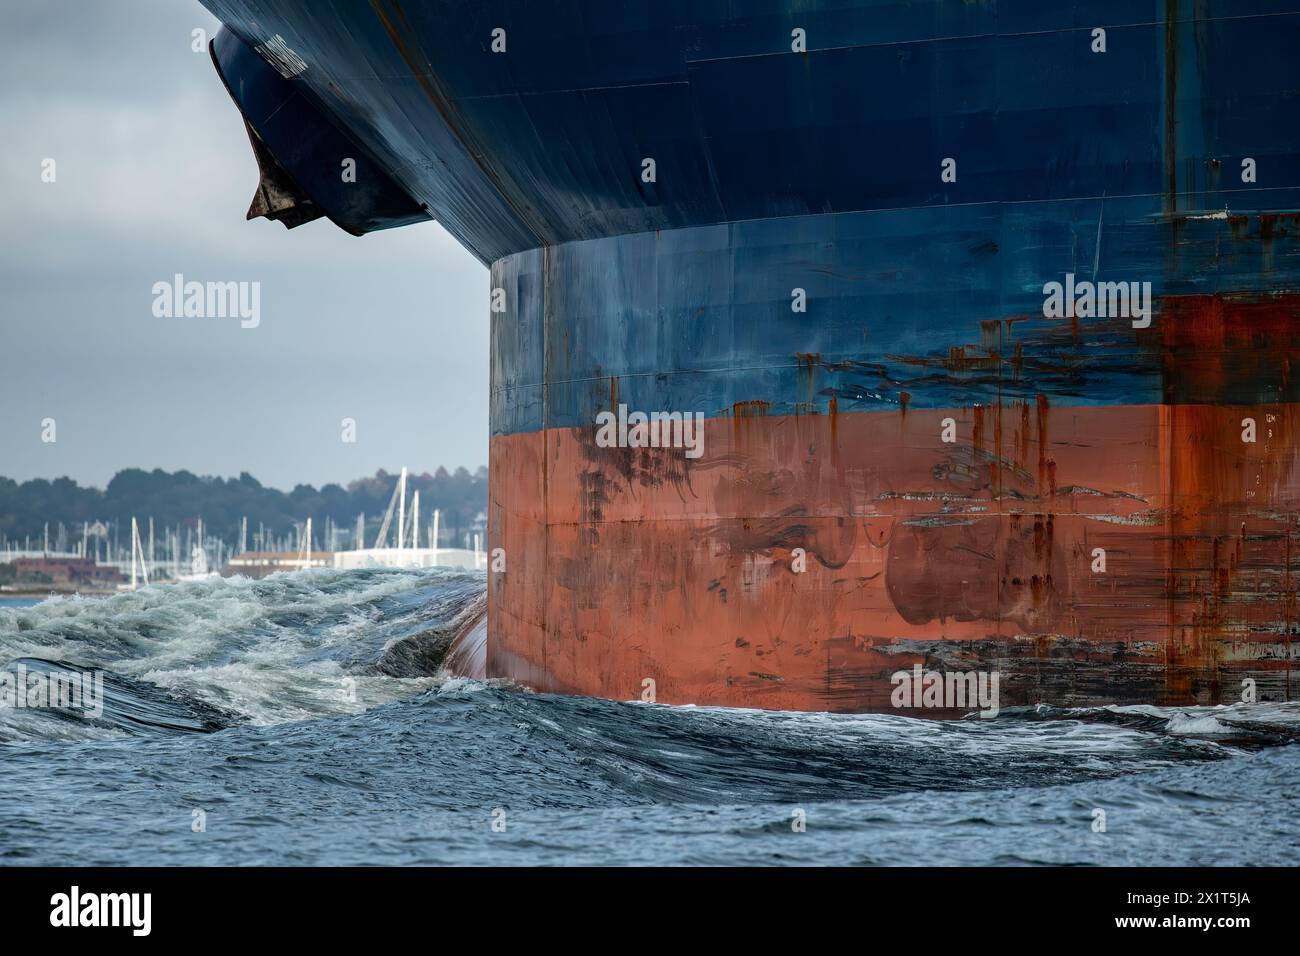 Große blaue Containerschiffe Bug mit rostigen Ankern schiebt eine riesige Bogenwelle durch den Ozean. Stockfoto